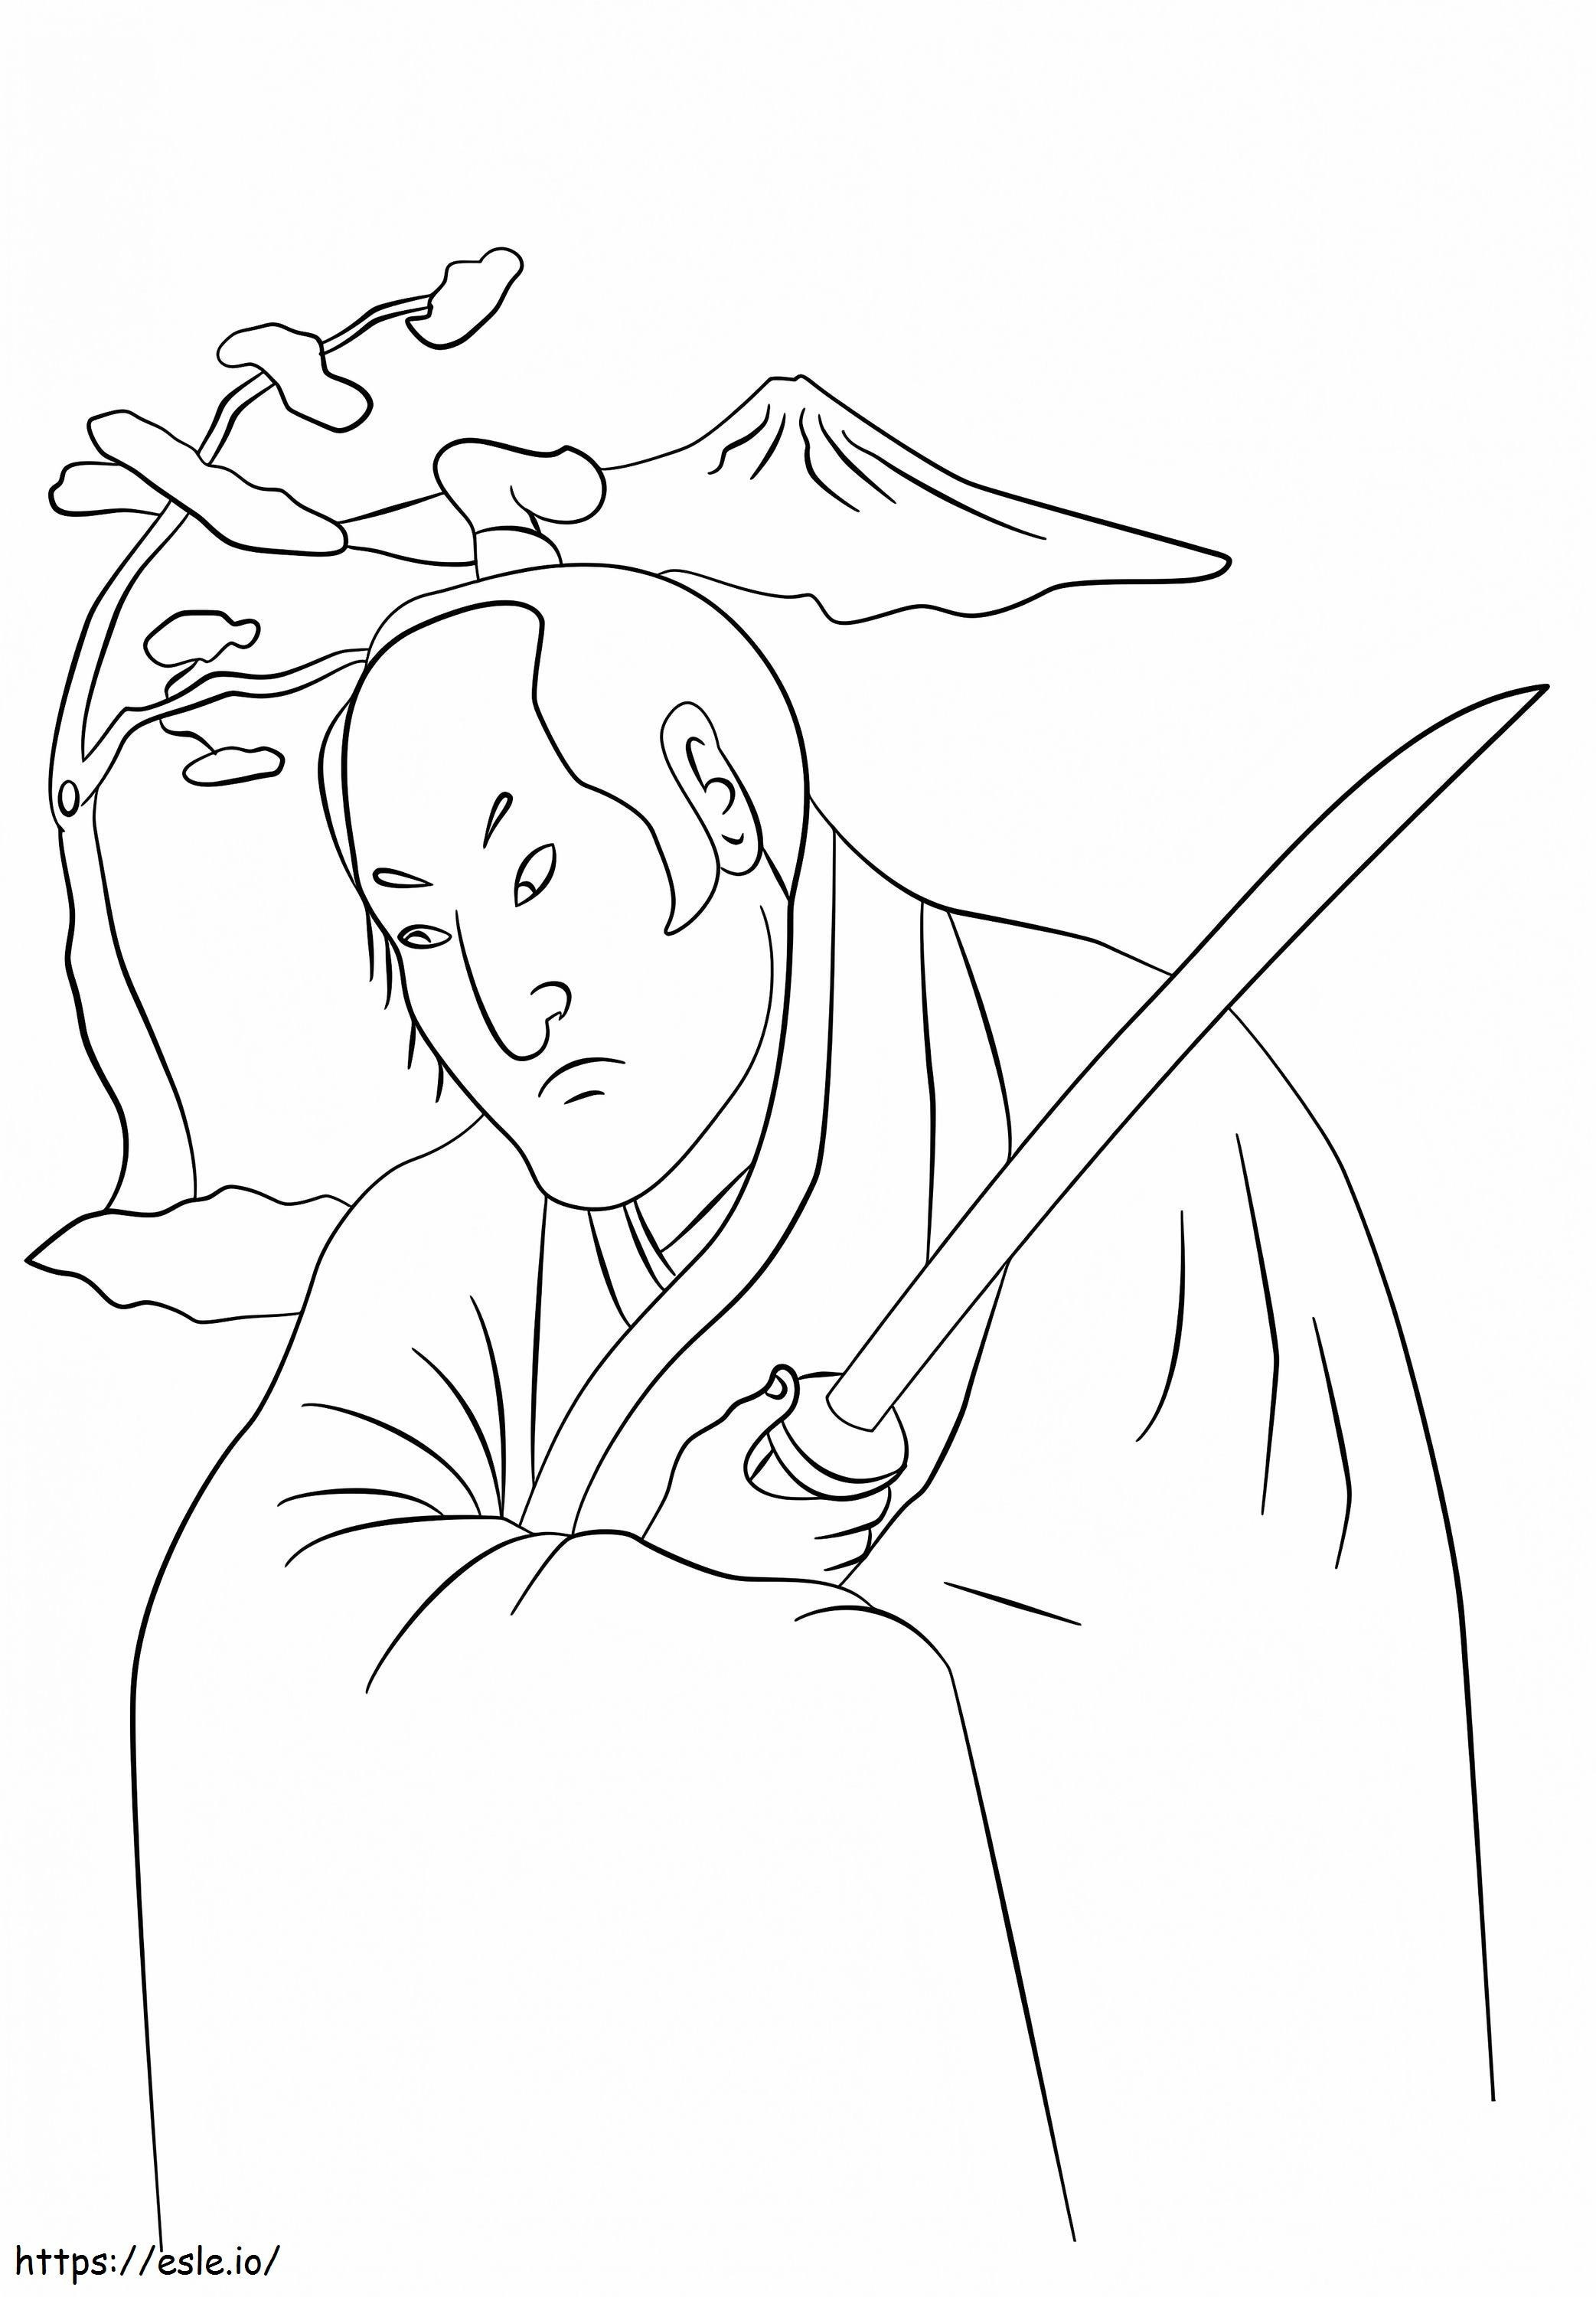 Guerreiro Samurai para colorir